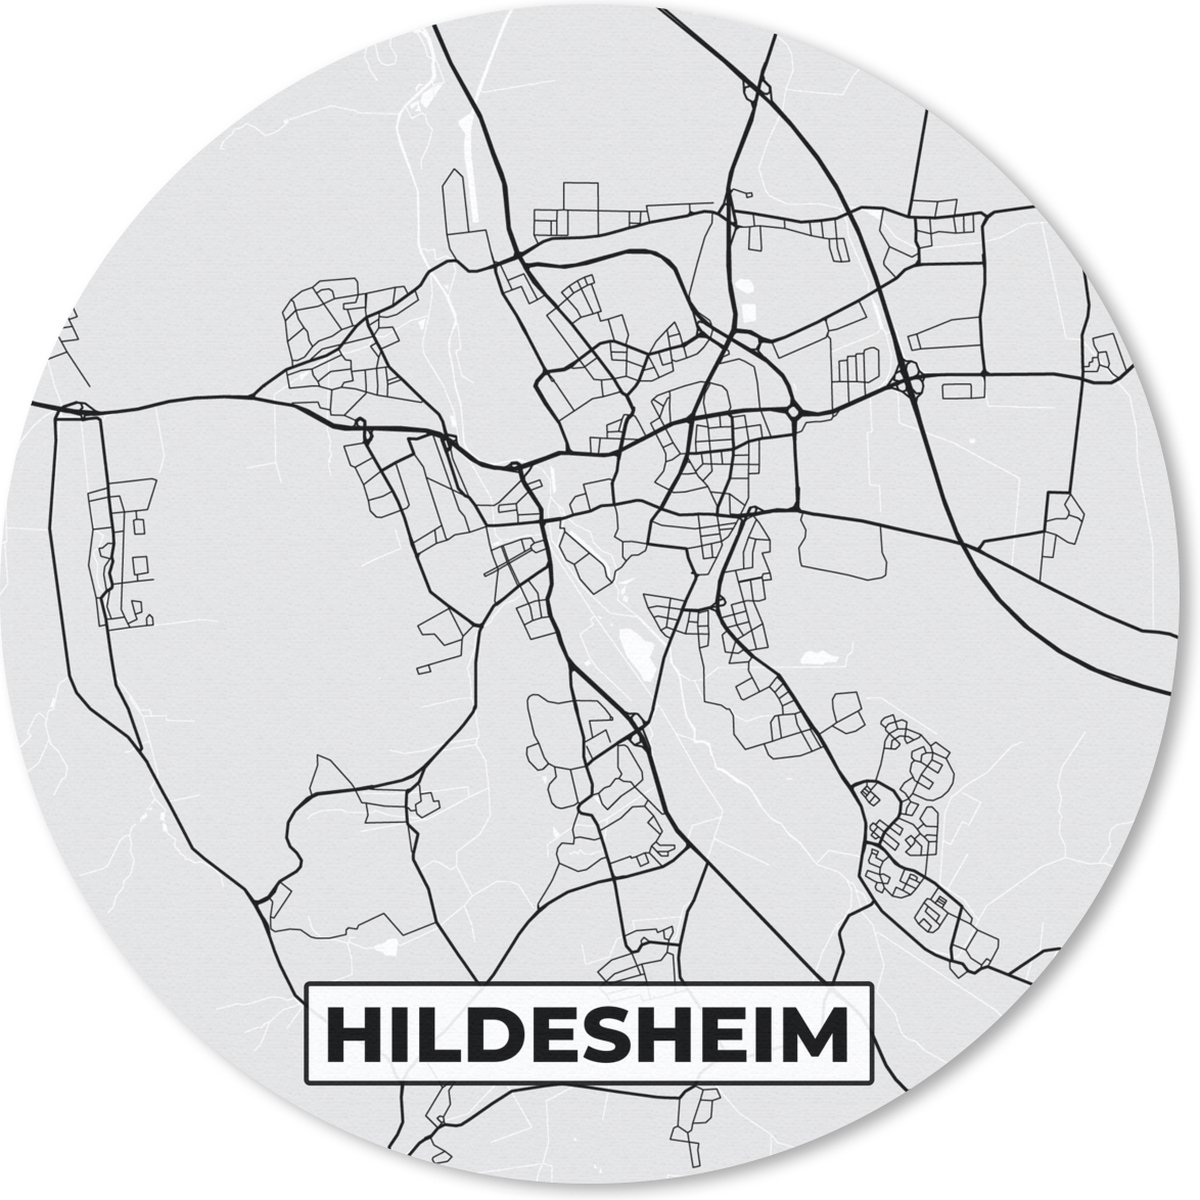 Muismat - Mousepad - Rond - Hildesheim - Kaart - Stadskaart - Duitsland - Plattegrond - 30x30 cm - Ronde muismat